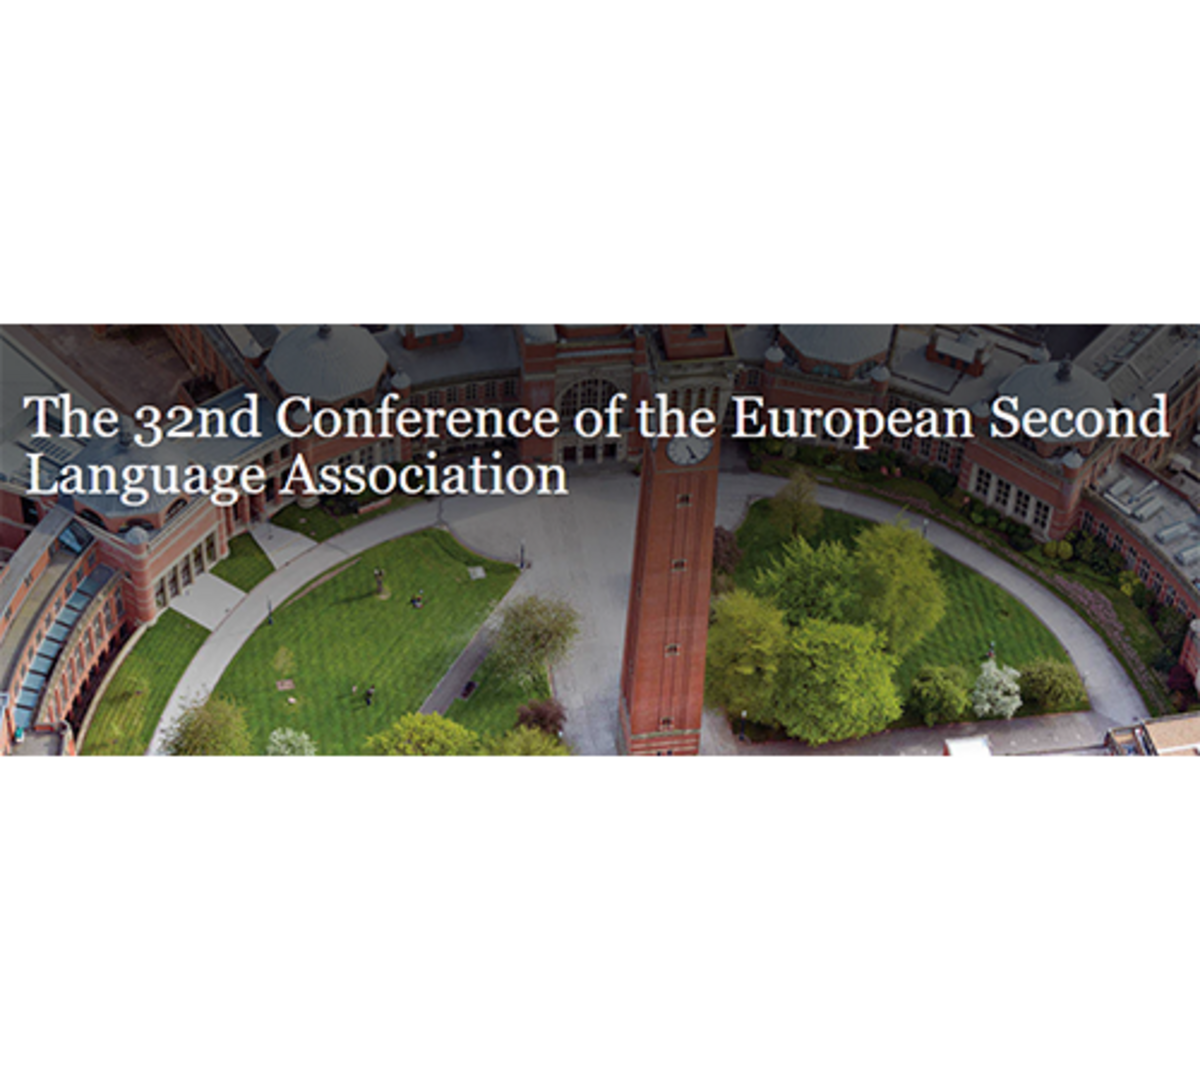 Blick auf den Campus der Universität Birmingham mit Ankündigung: the 32nd Conference of the European Second Language Association.